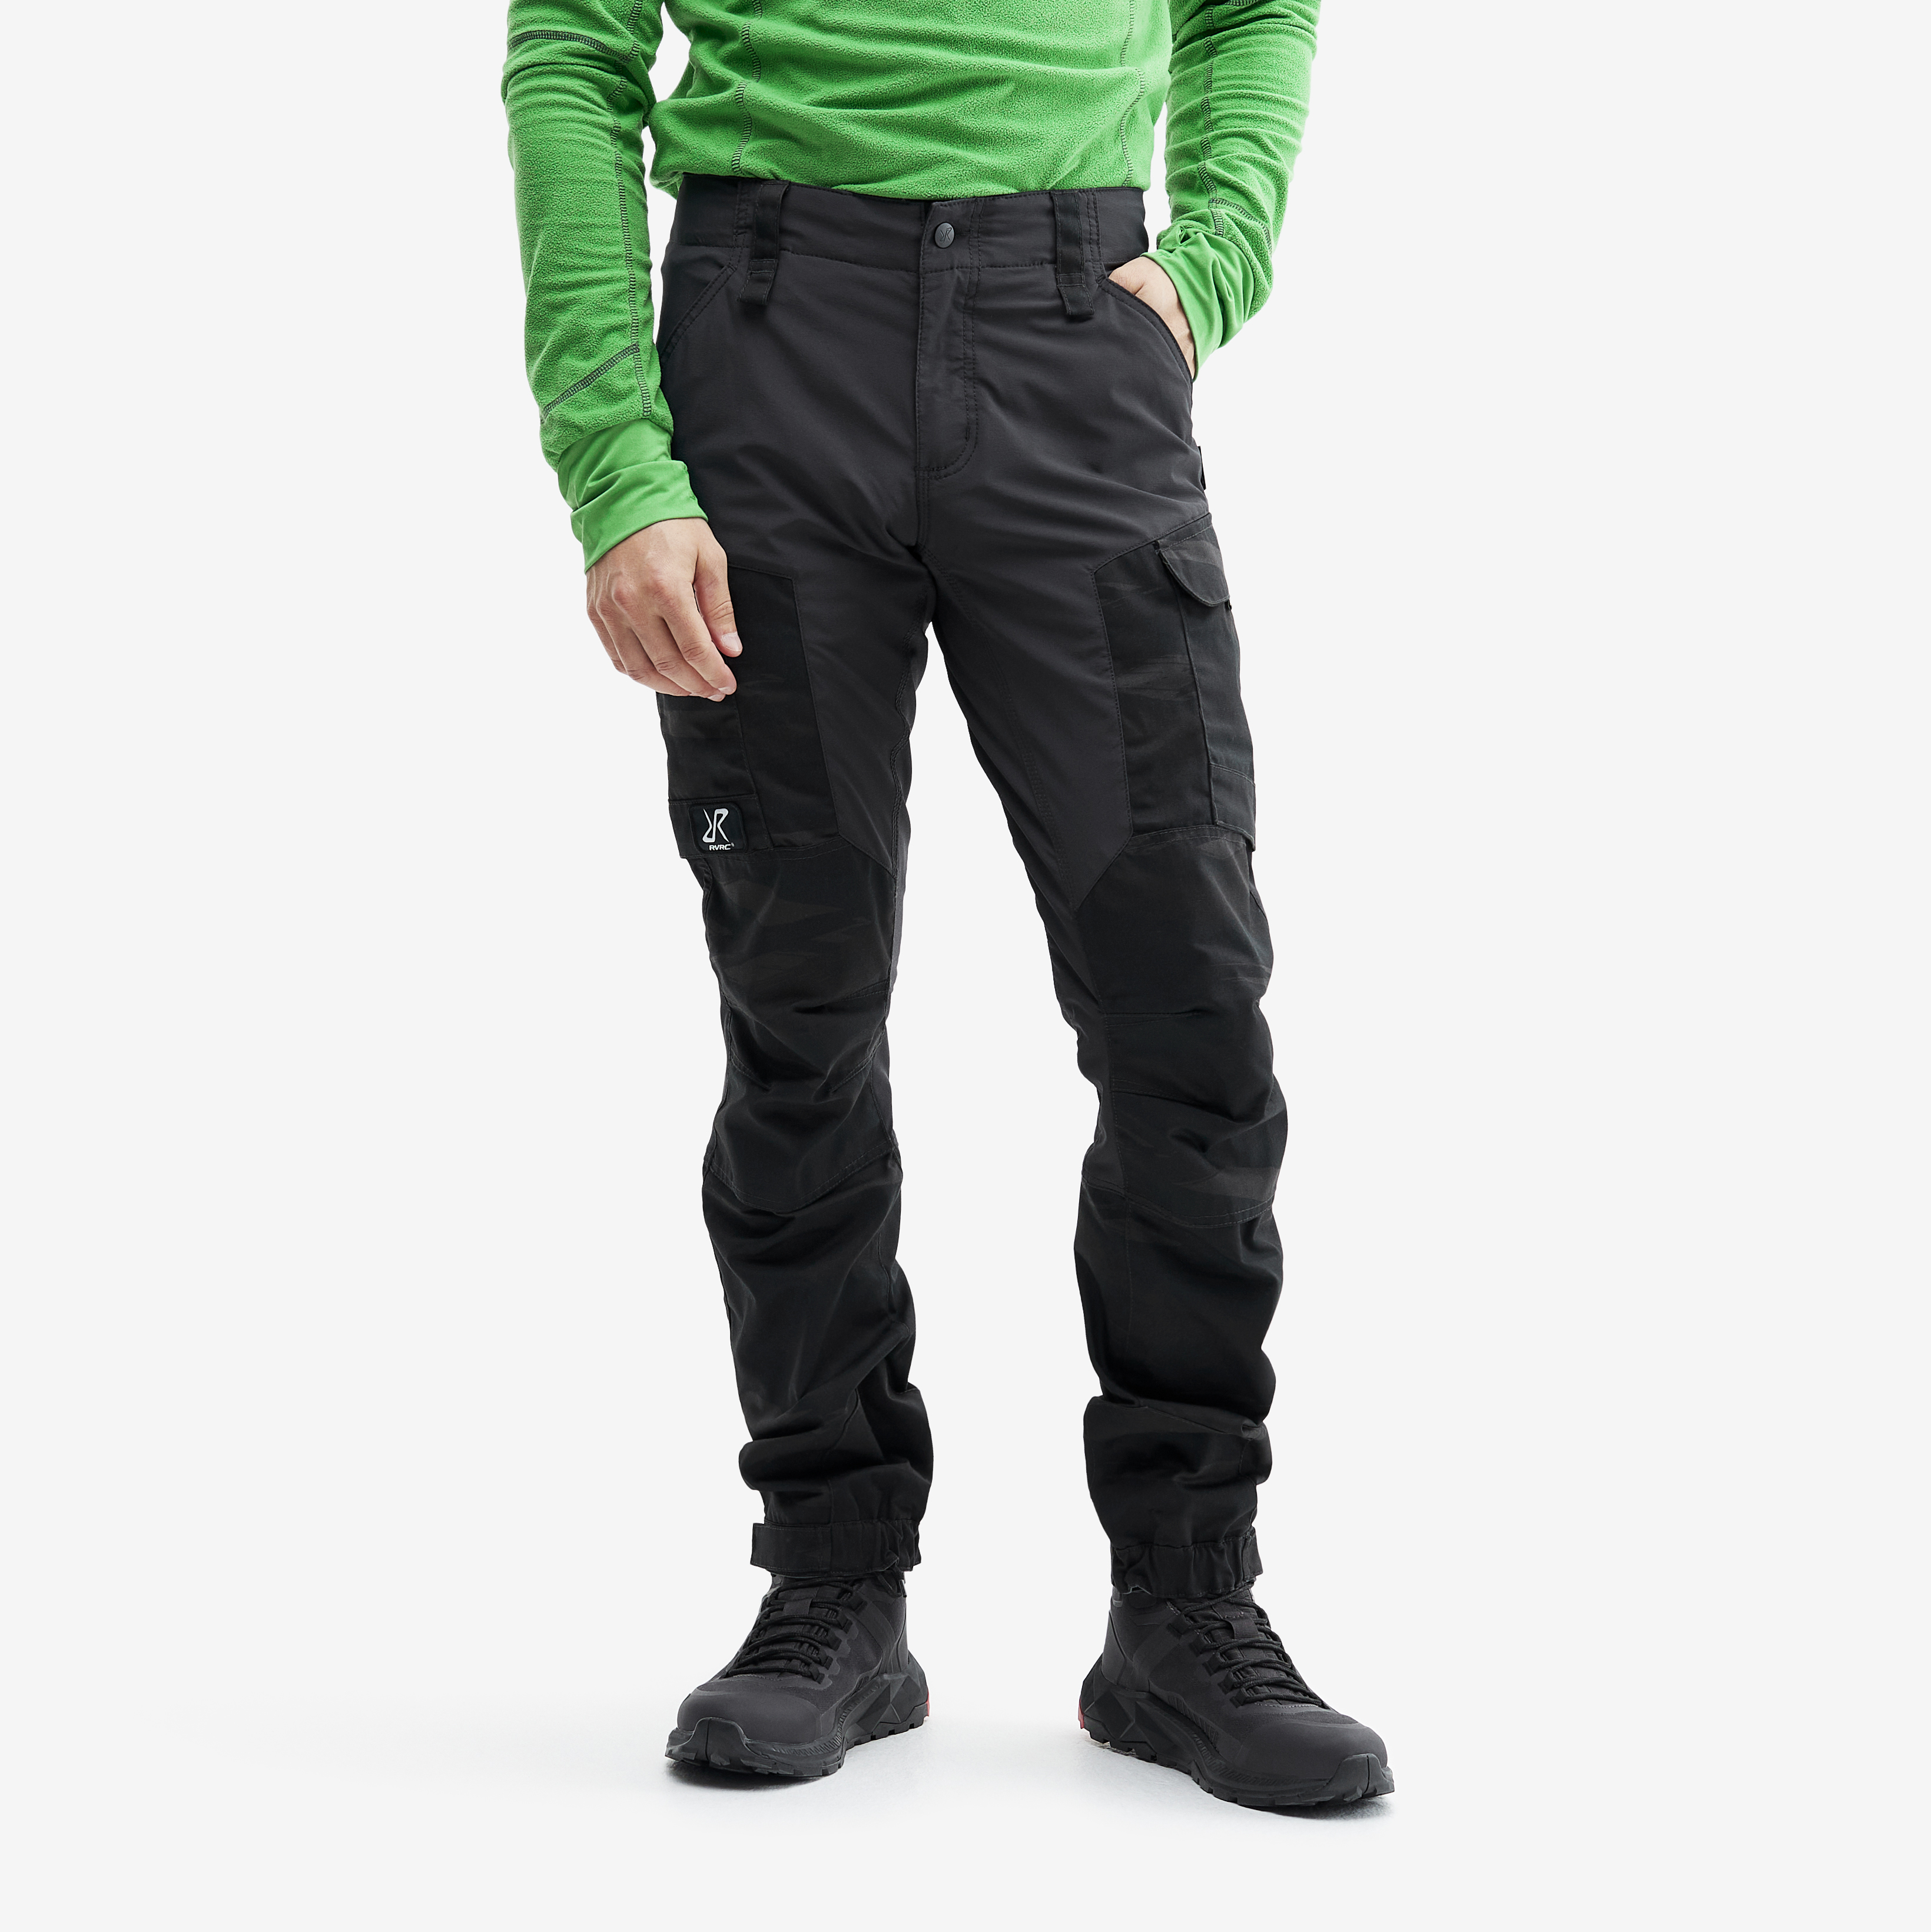 RVRC GP outdoorové kalhoty pro muže v tmavě šedé barvě